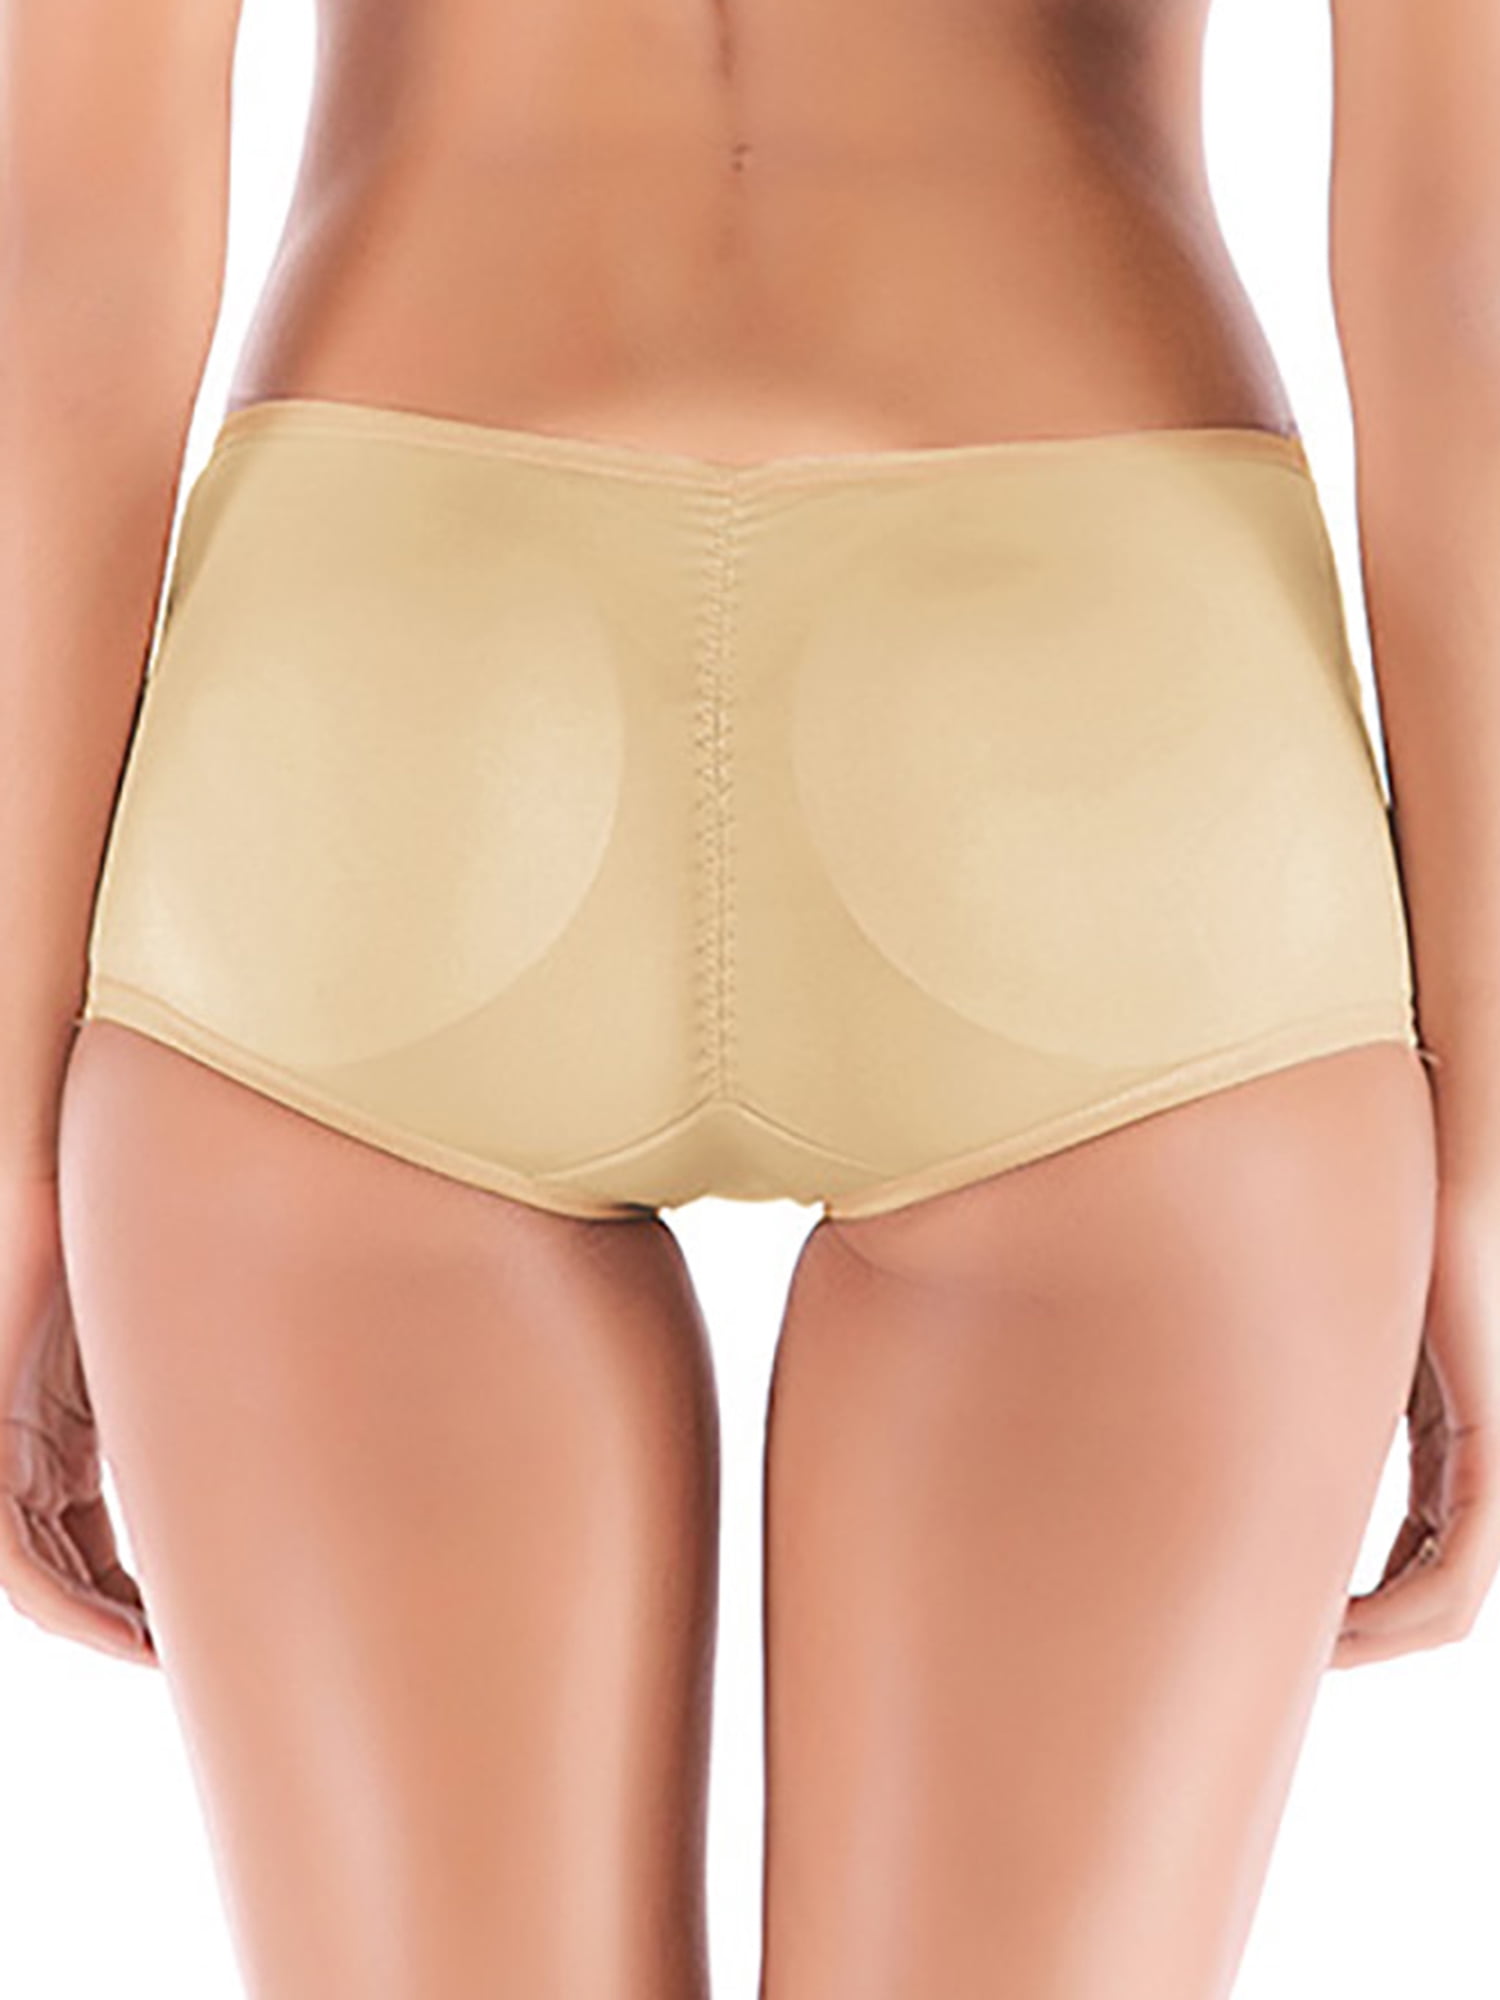 FOCUSSEXY Women's High Waist Butt Lifter Panties Tummy Control Panties Body  Shaper Underwear Seamless Panty Padded Panties Shapewear Waist Cincher